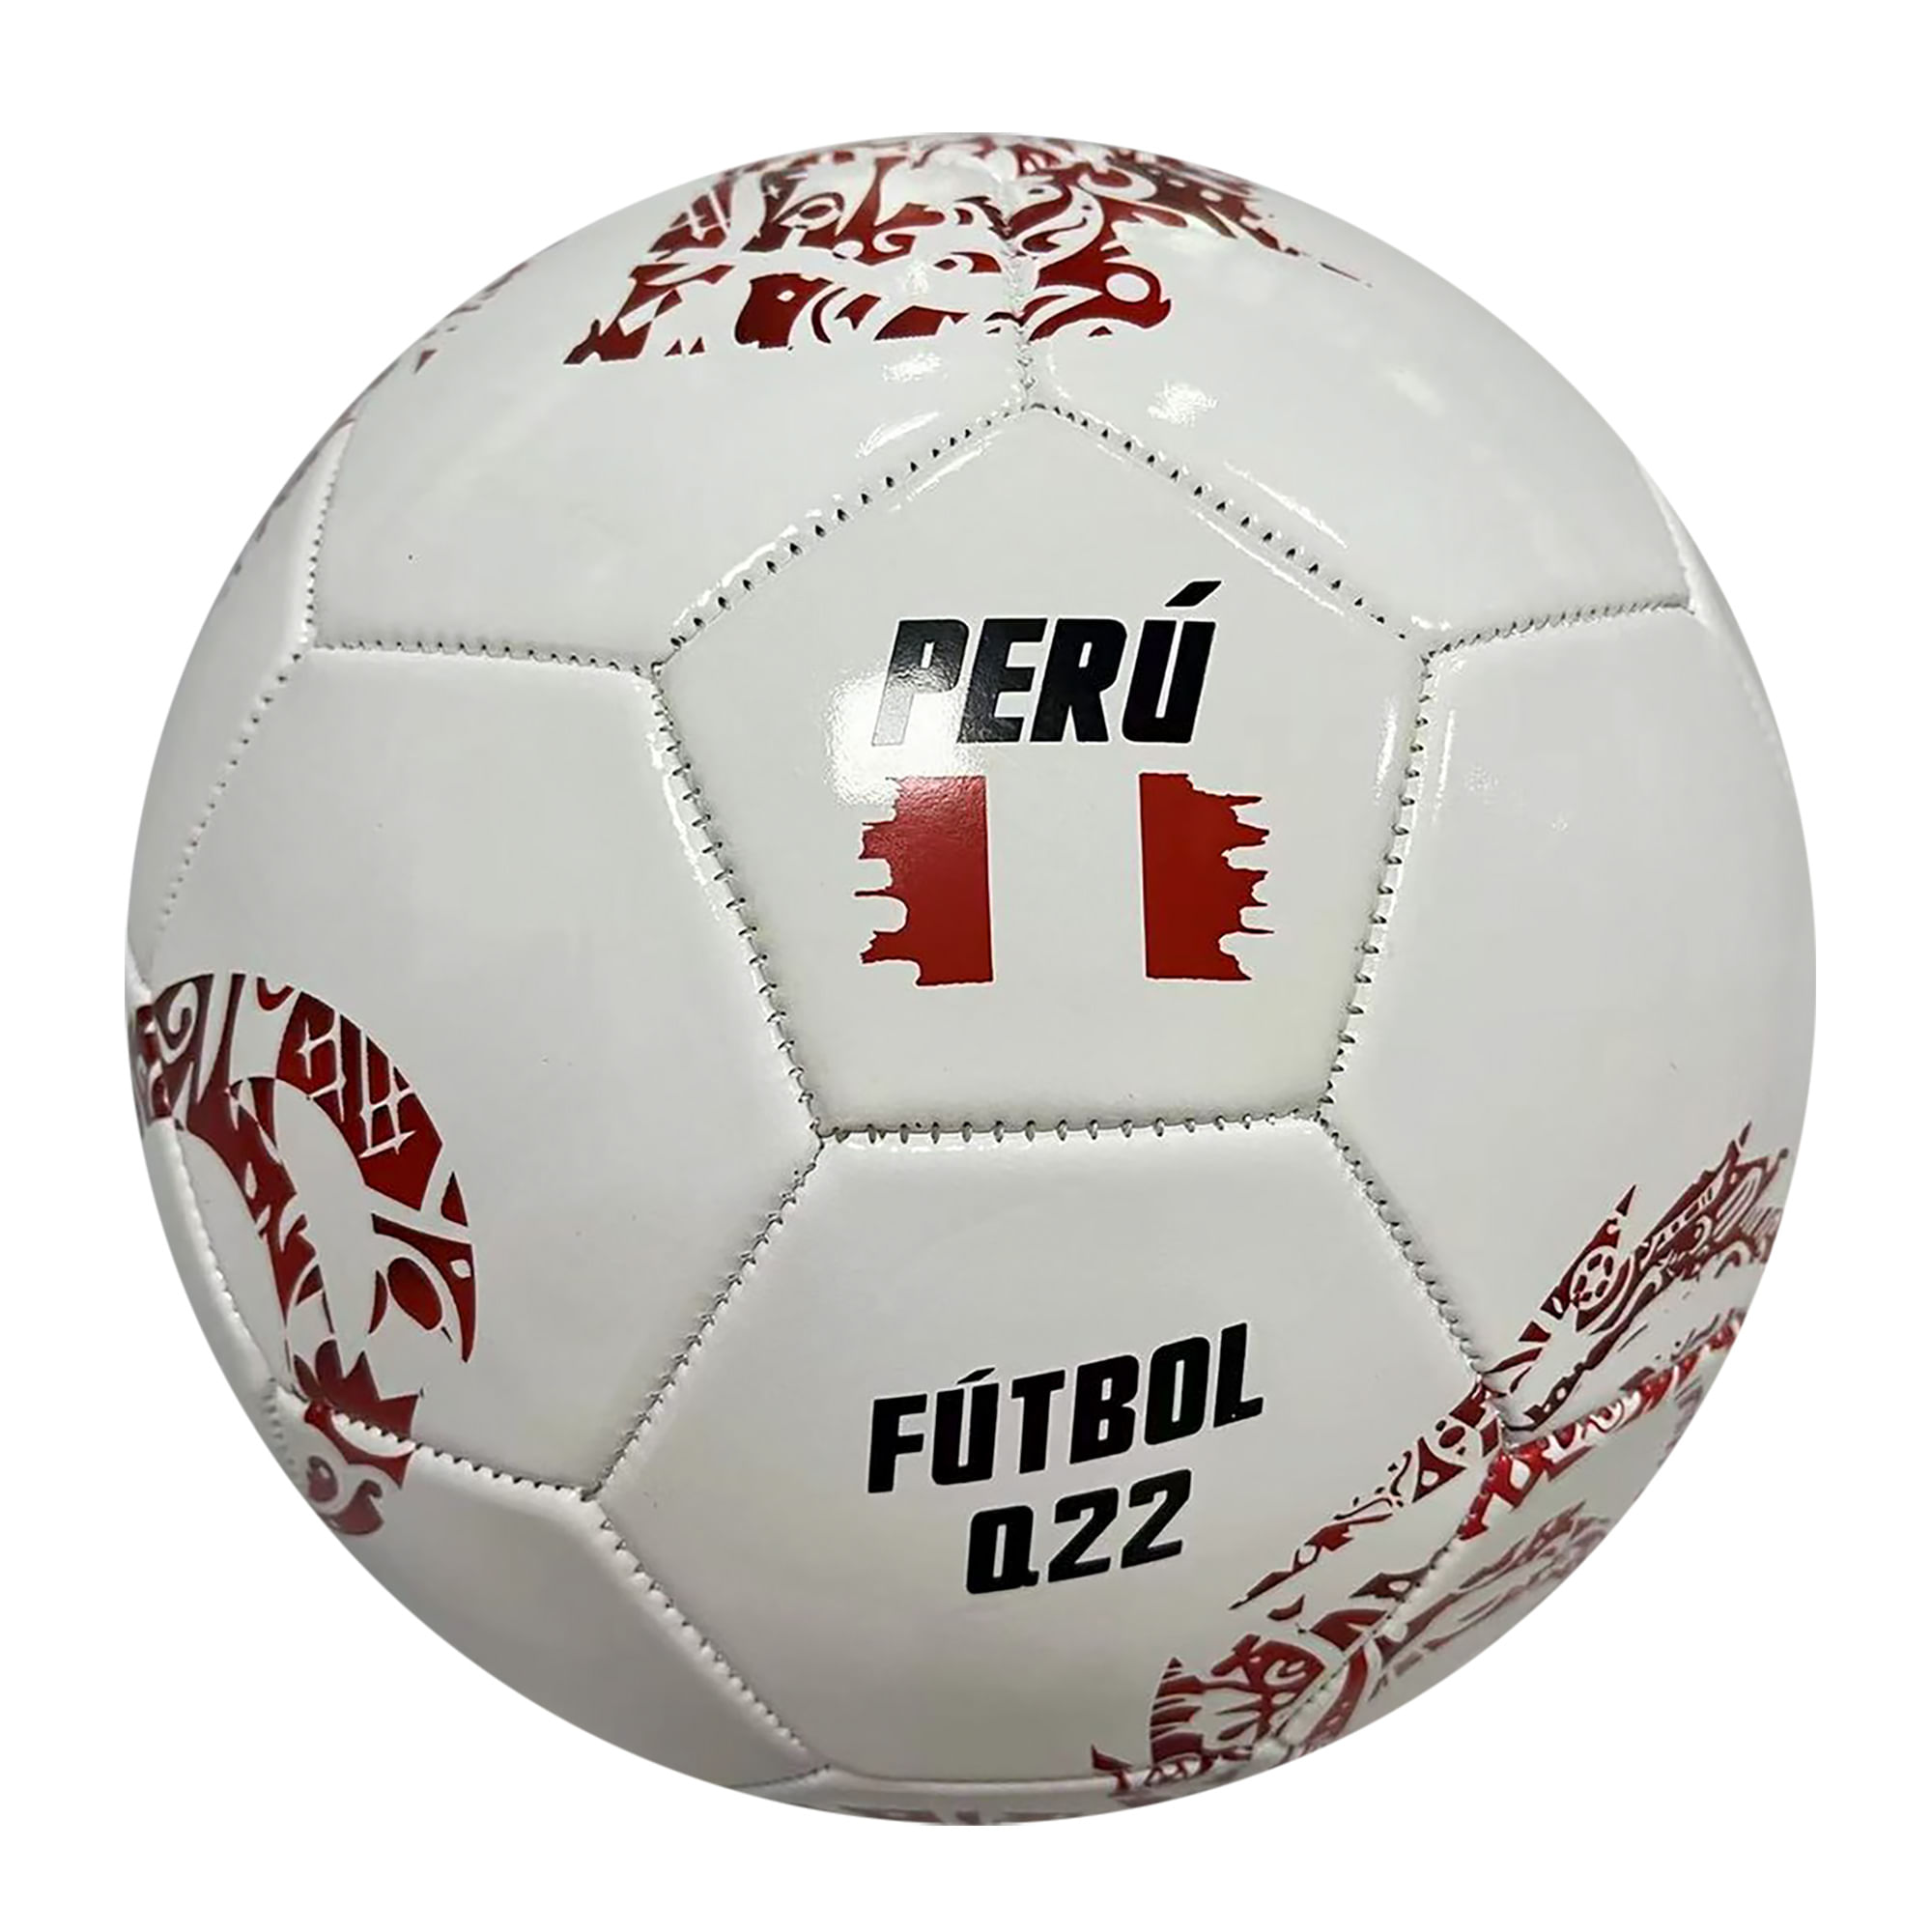 Pelota de Fútbol Q22 Perú Talla 5